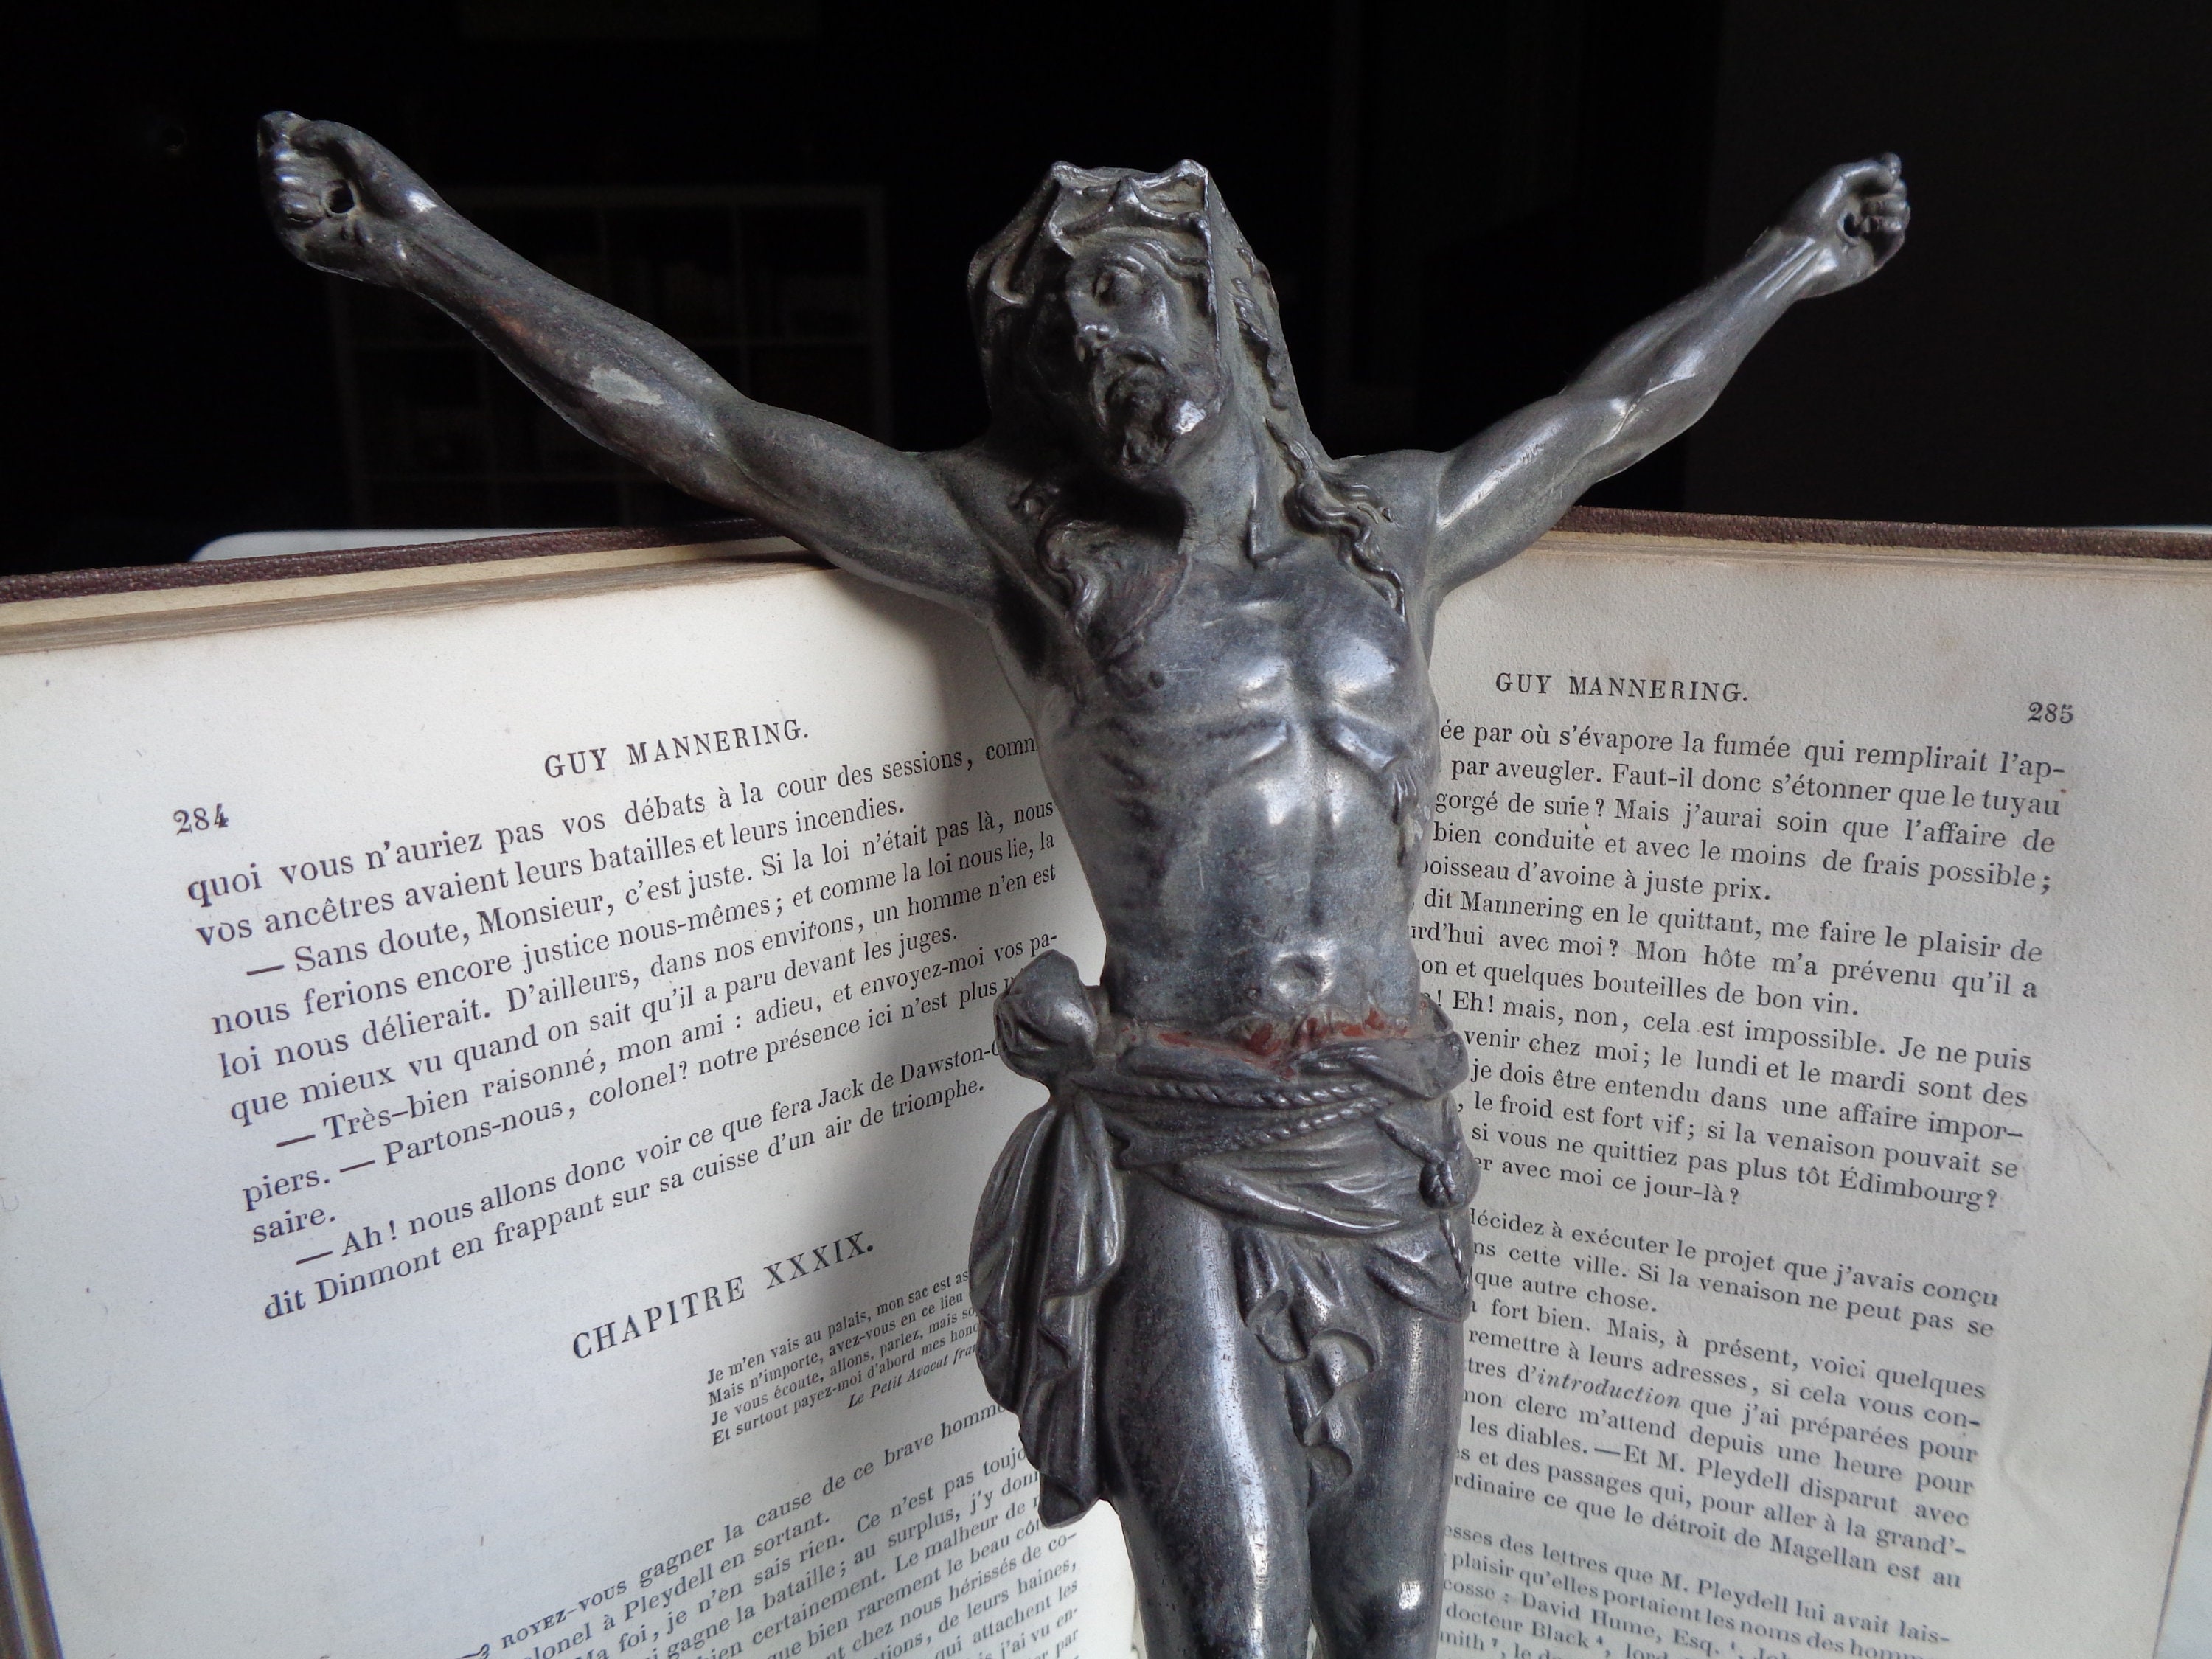 Corps du Christ, sans sa croix, en métal gris, article religieux